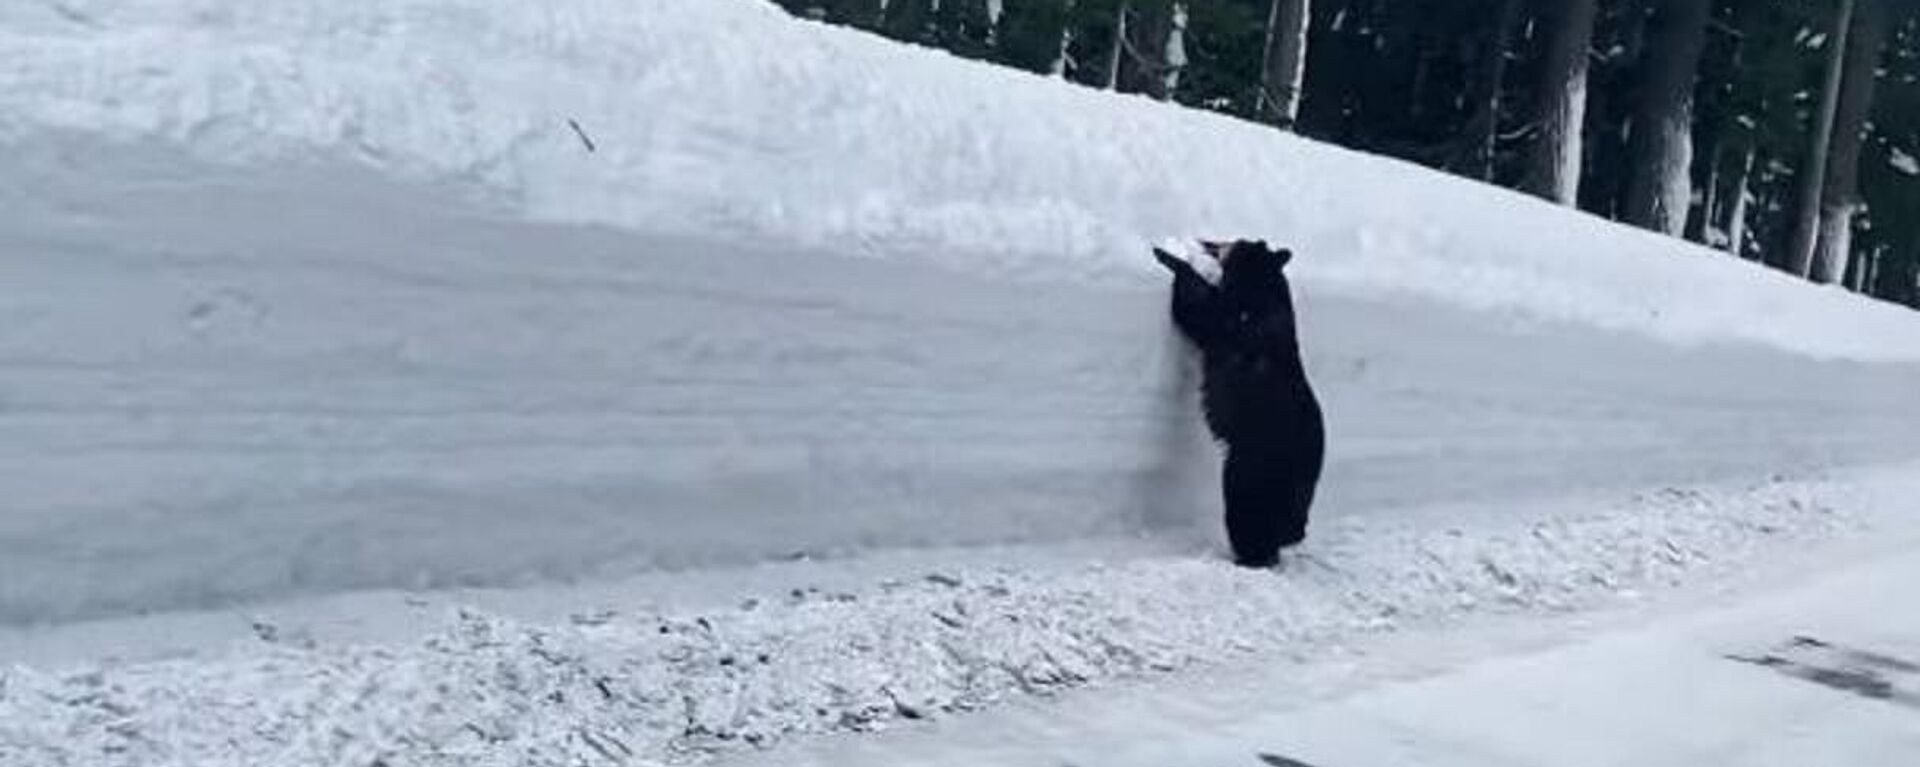 A la desesperada: un oso es acorralado por la nieve en la carretera - Sputnik Mundo, 1920, 03.03.2021